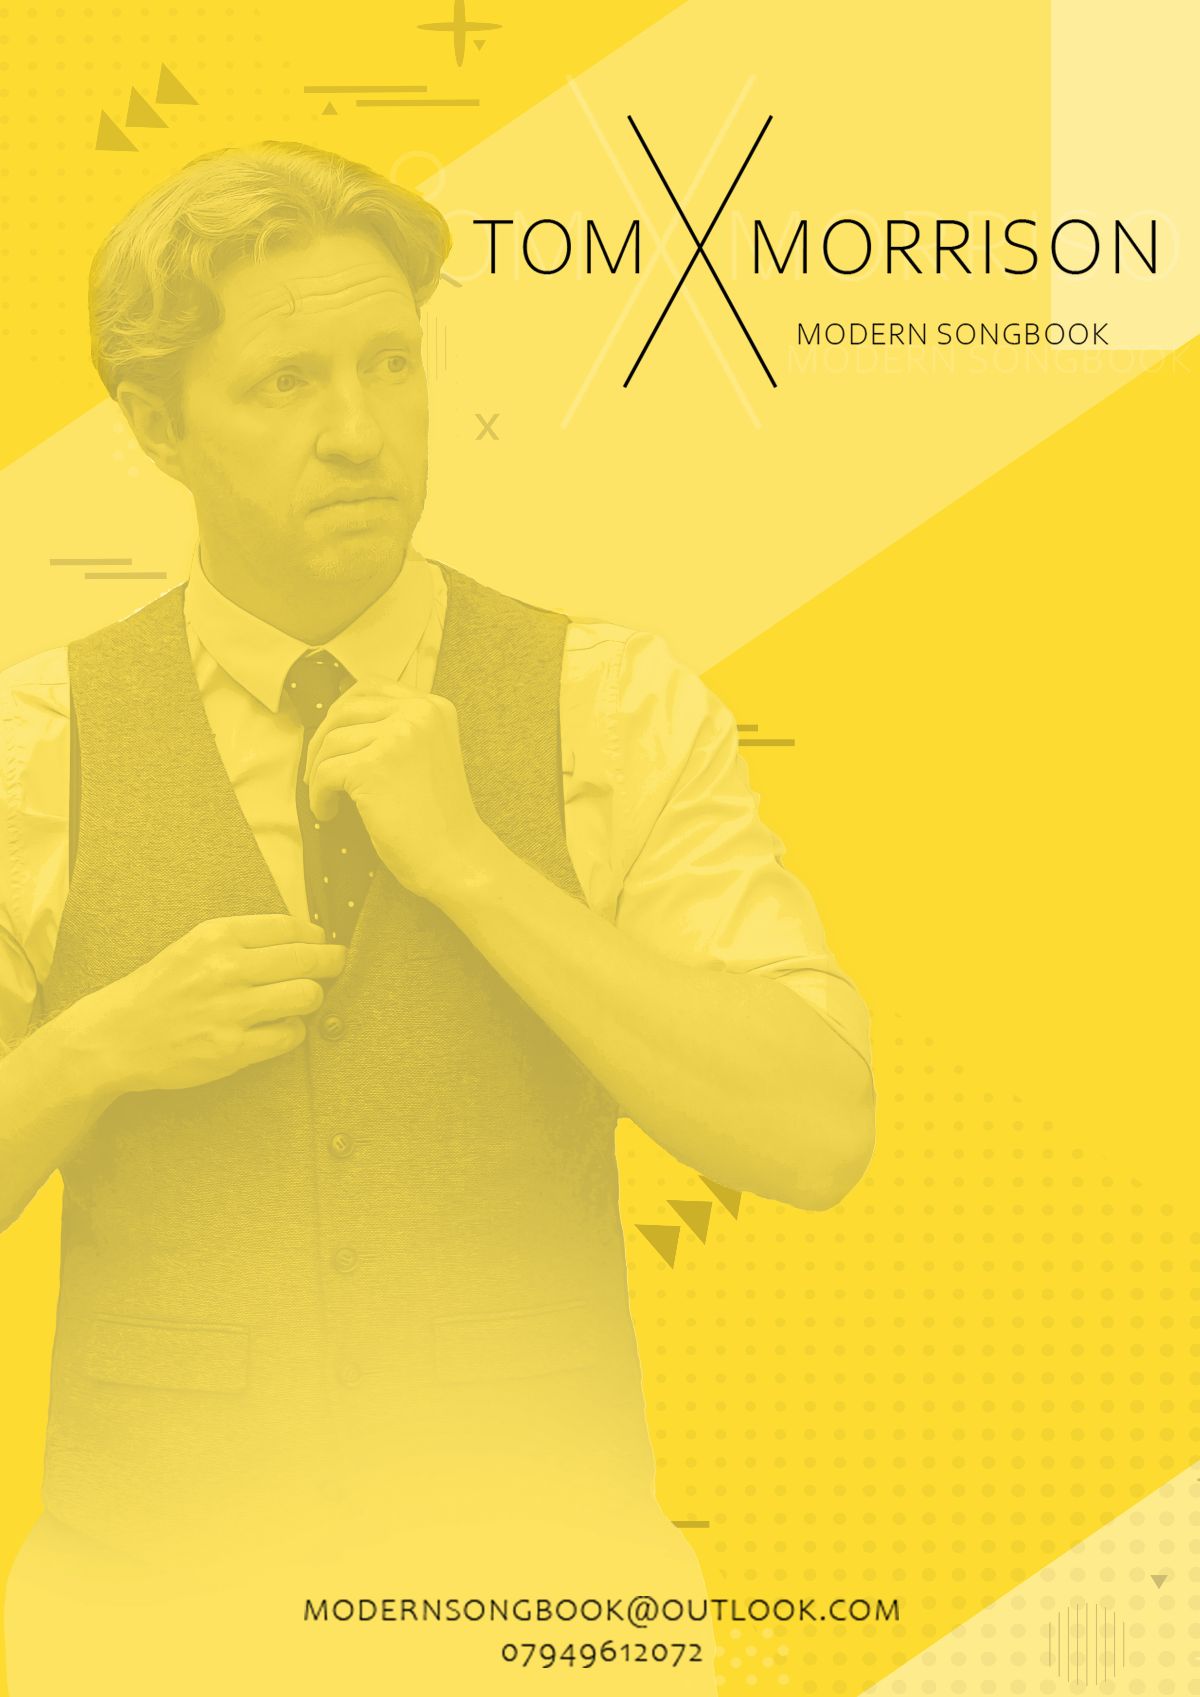 Tom Morrison Music-Image-96